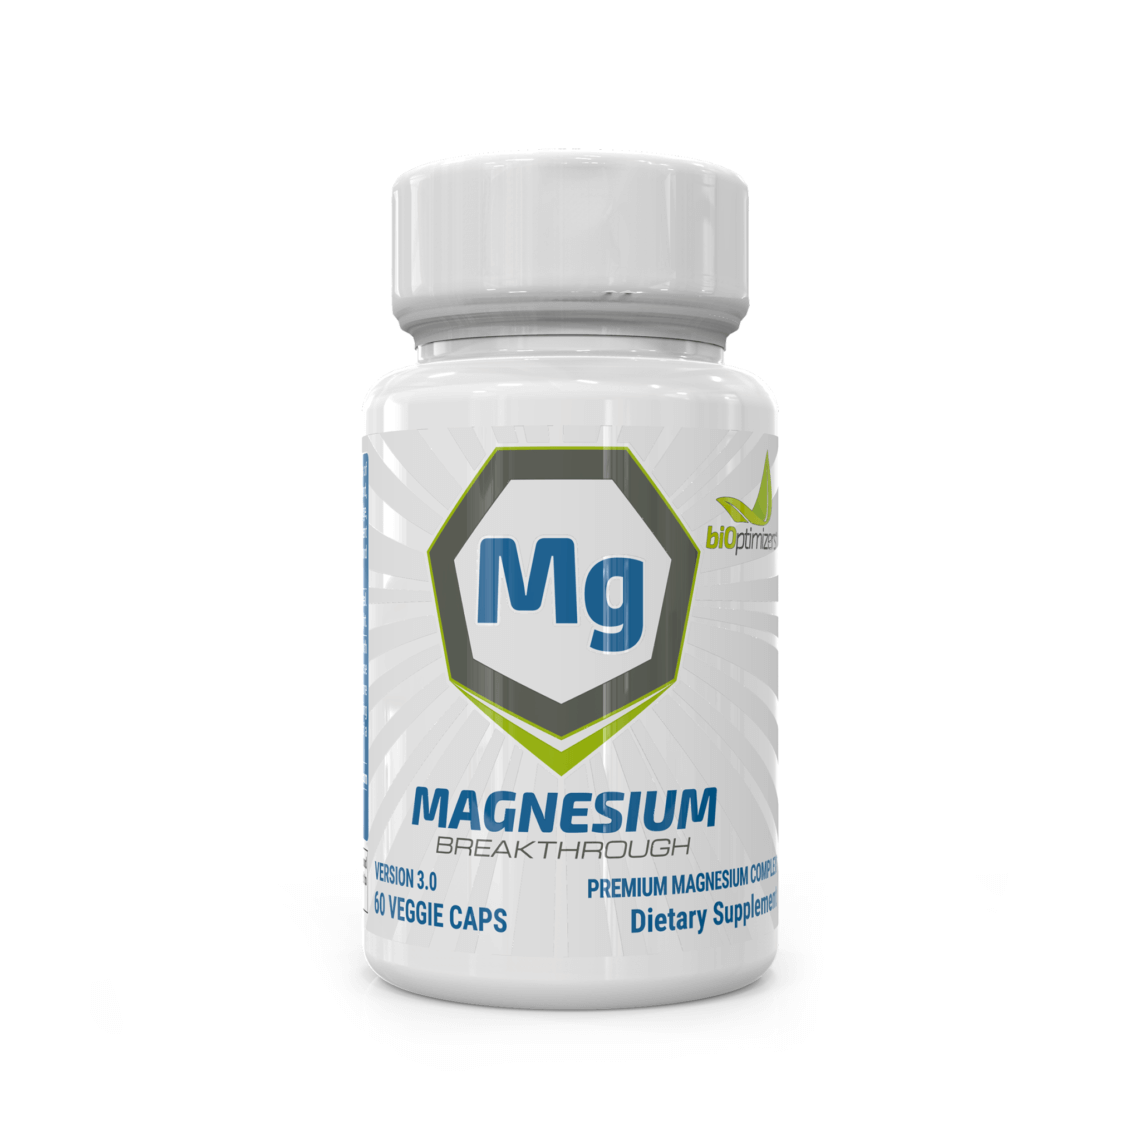 Magnesium Breakthrough Coupon - Magnesium Sulfate Supplement